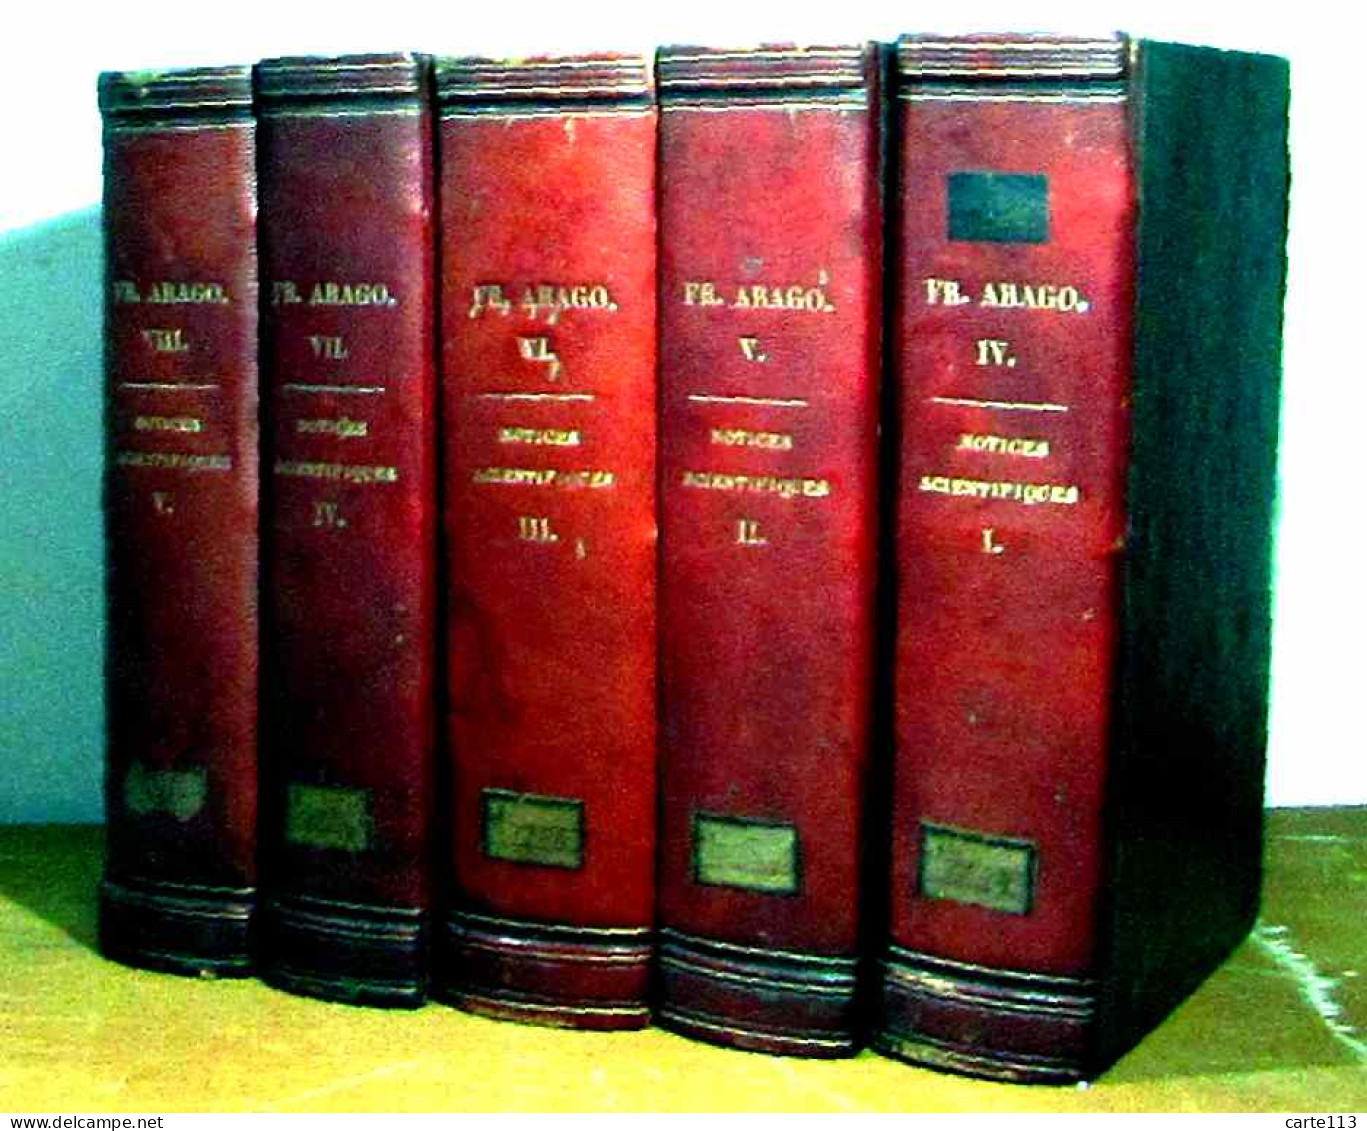 ARAGO Francois - NOTICES SCIENTIFIQUES - 5 VOLUMES - TOMES I A V - 1801-1900